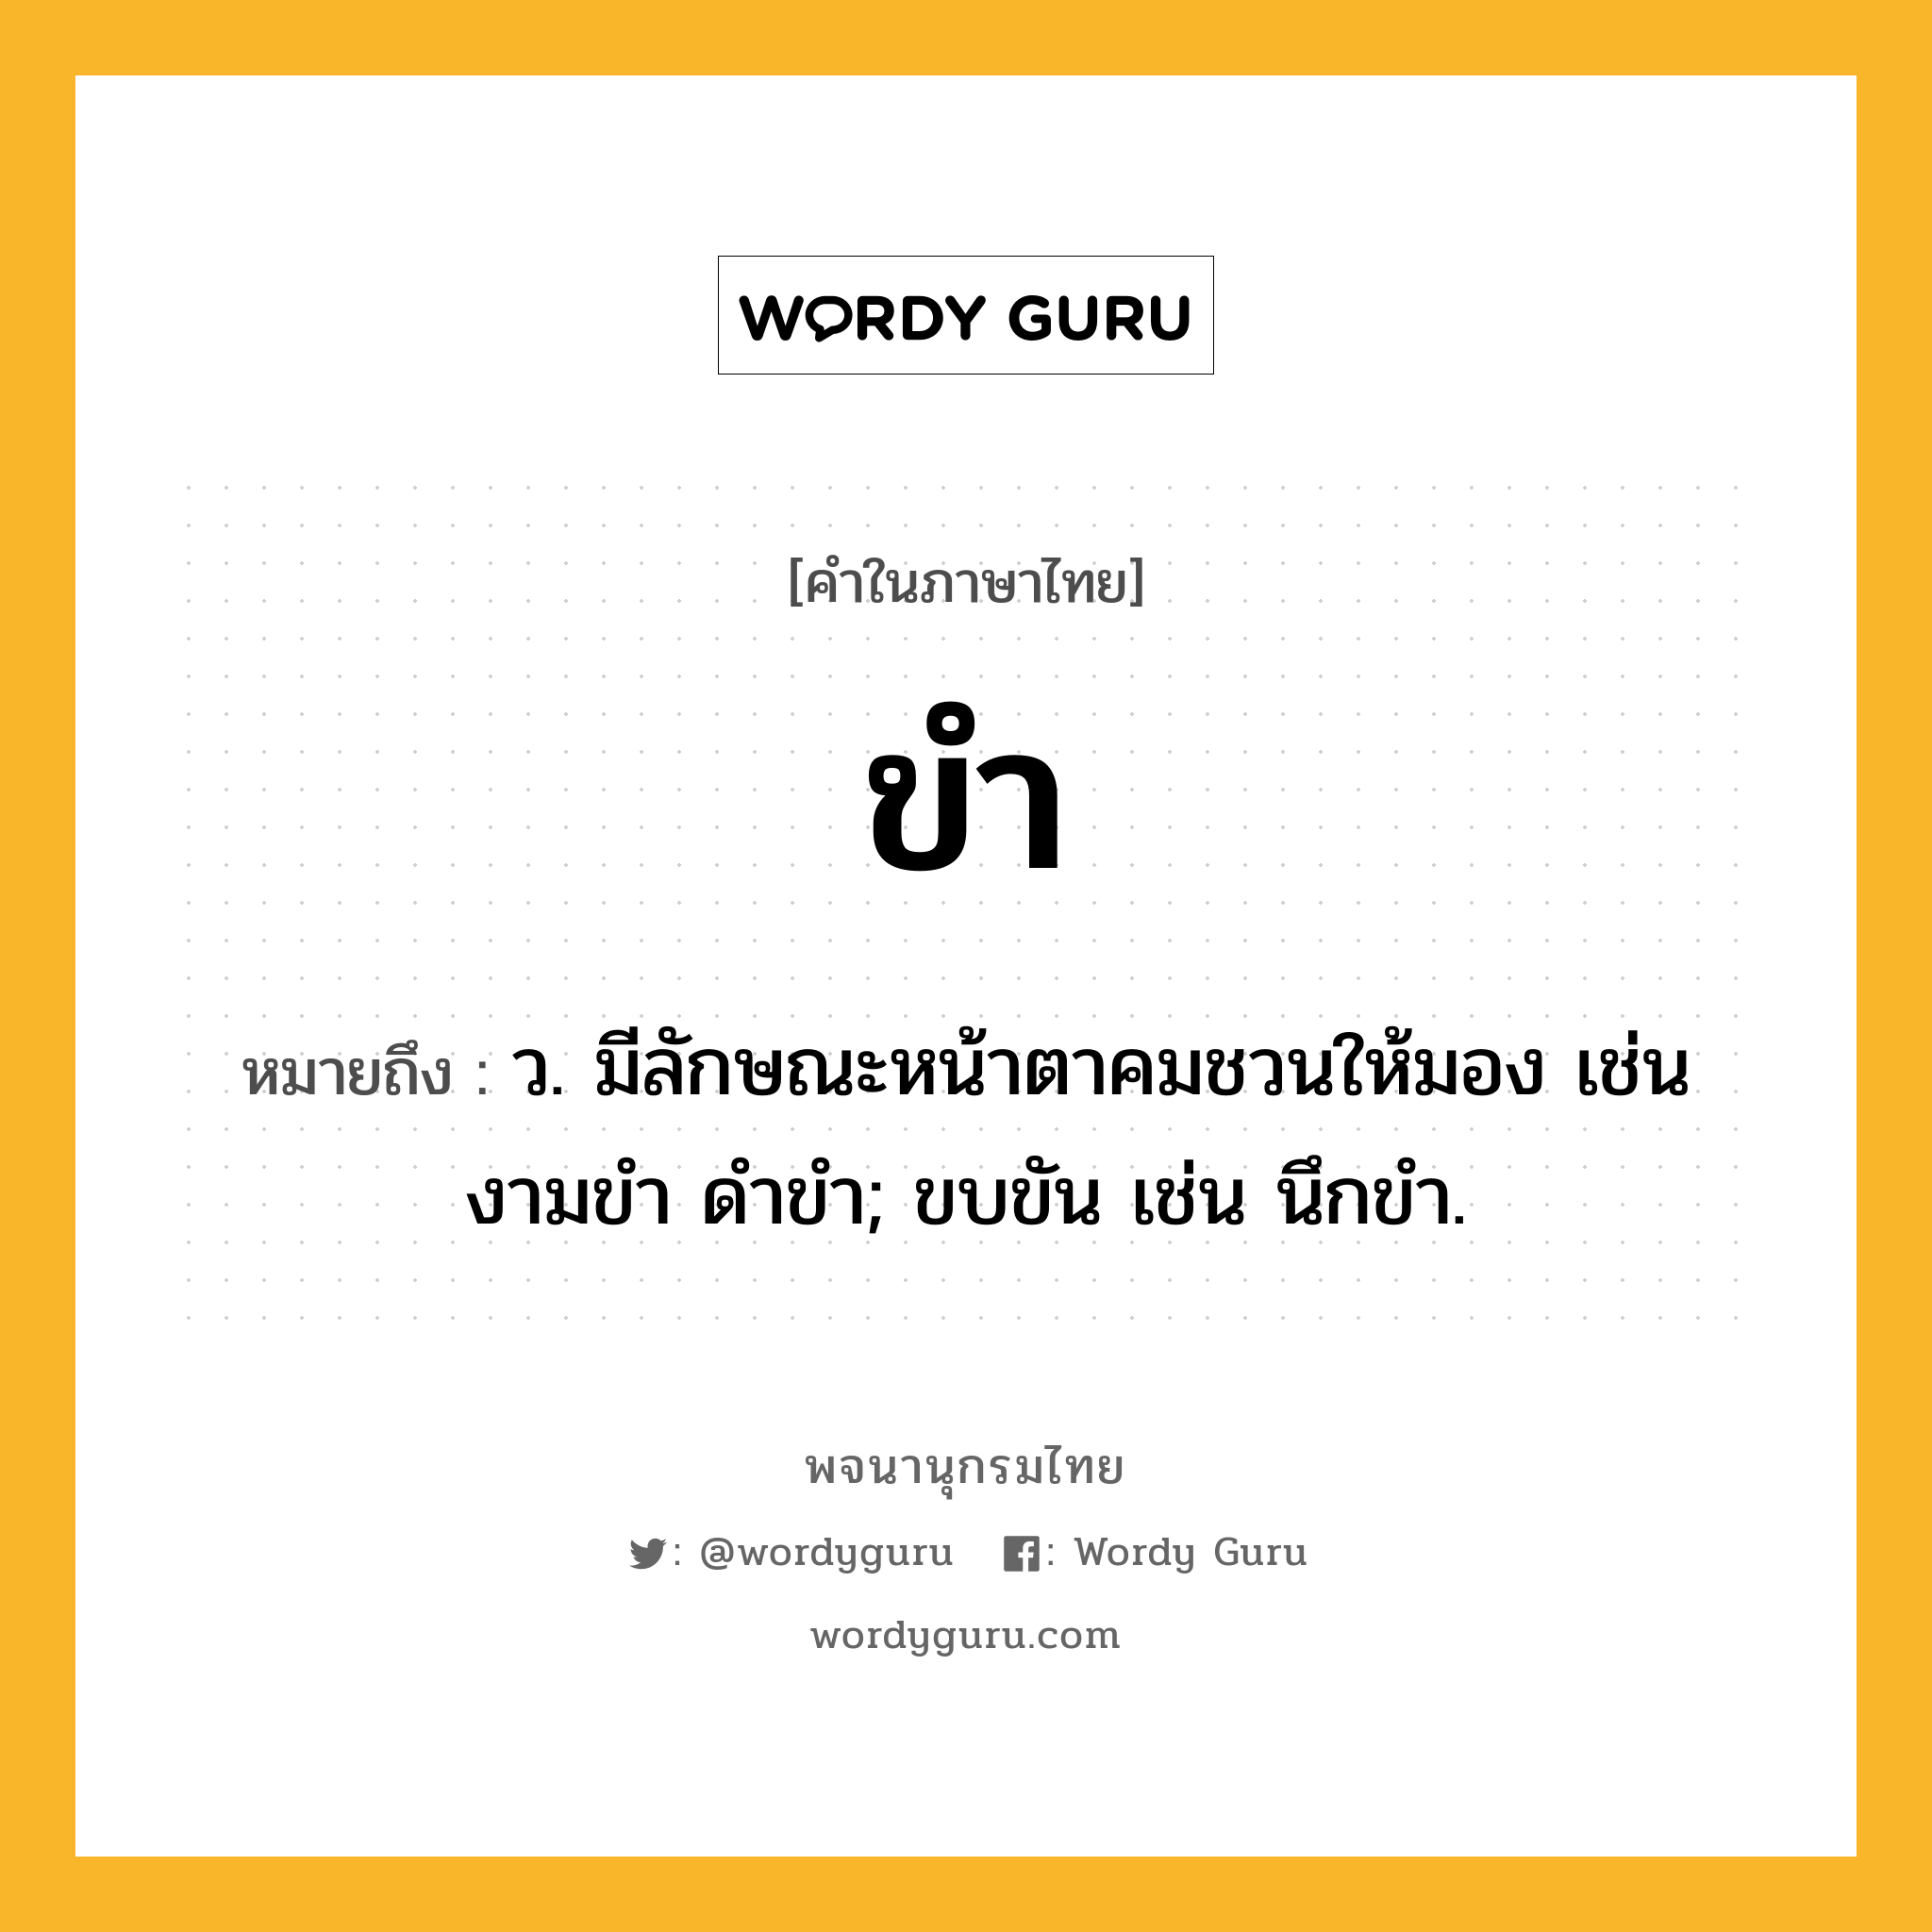 ขำ หมายถึงอะไร?, คำในภาษาไทย ขำ หมายถึง ว. มีลักษณะหน้าตาคมชวนให้มอง เช่น งามขํา ดำขำ; ขบขัน เช่น นึกขํา.